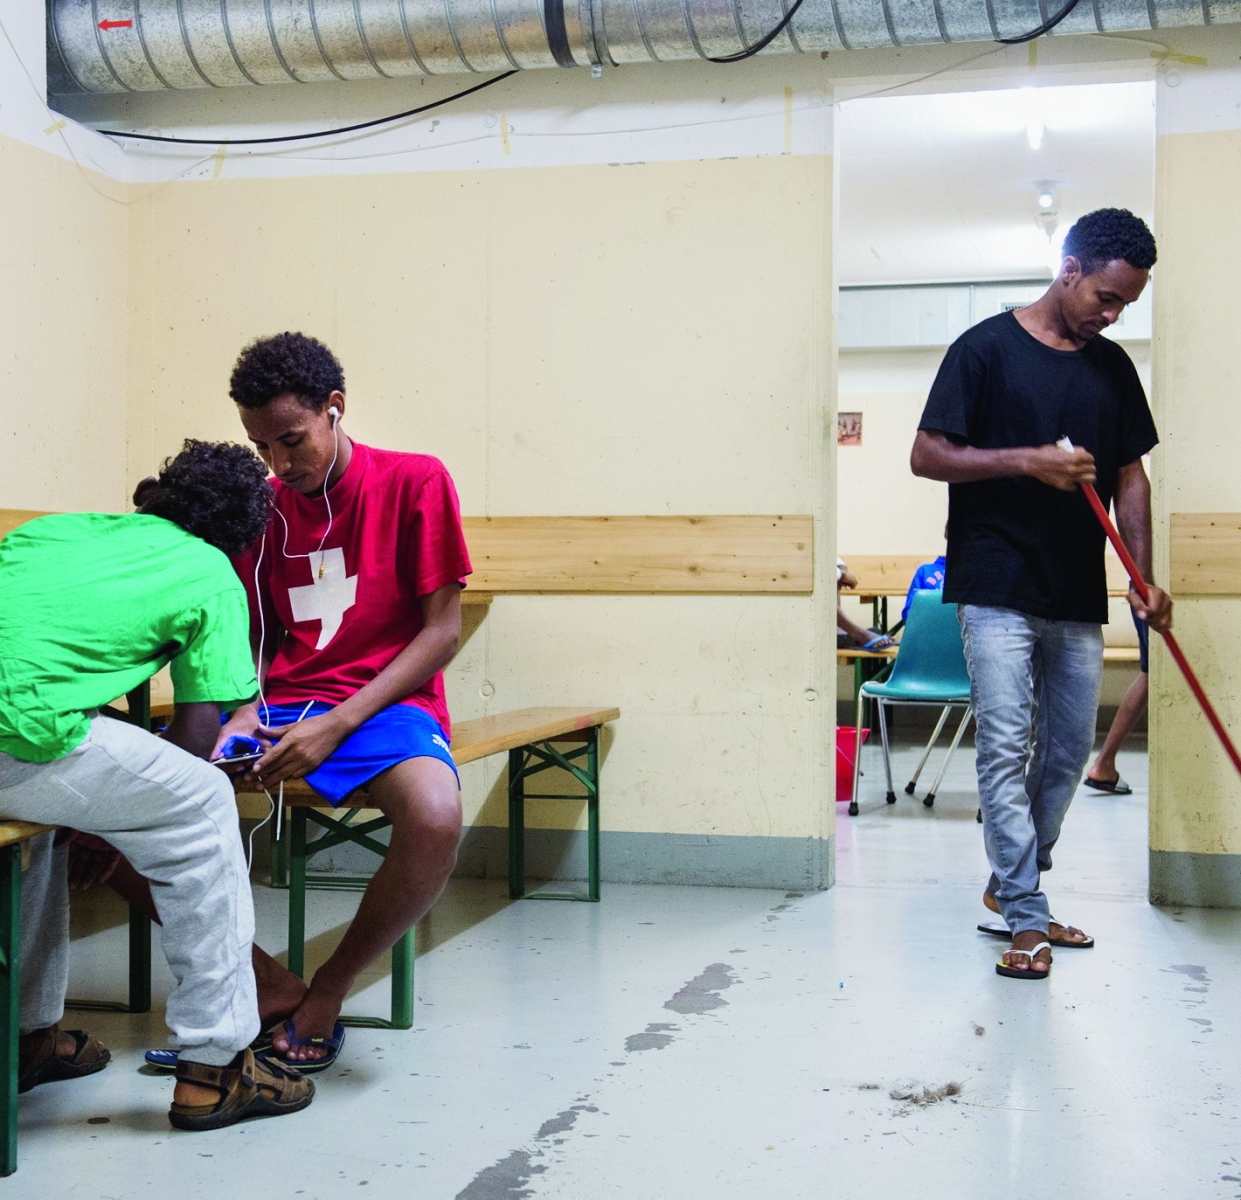 ZU DEN ZAHLEN UEBER ASYLGESUCHE IN DER SCHWEIZ 2014 STELLEN WIR IHNEN AM DONNERSTAG, 22. JANUAR 2015, FOLGENDES ARCHIVBILD ZUR VERFUEGUNG -  Asylbewerber aus Eritrea in der Zivilschutzanlage von Lumino am Mittwoch, 20. August. Etwa 50 Asylbewerber aus Eritrea sind seit Ende Juli 2014 in der Zivilschutzanlage von Lumino untergebracht.  (KEYSTONE/Ti-Press/Gabriele Putzu) SCHWEIZ ASYL GESUCHE 2014